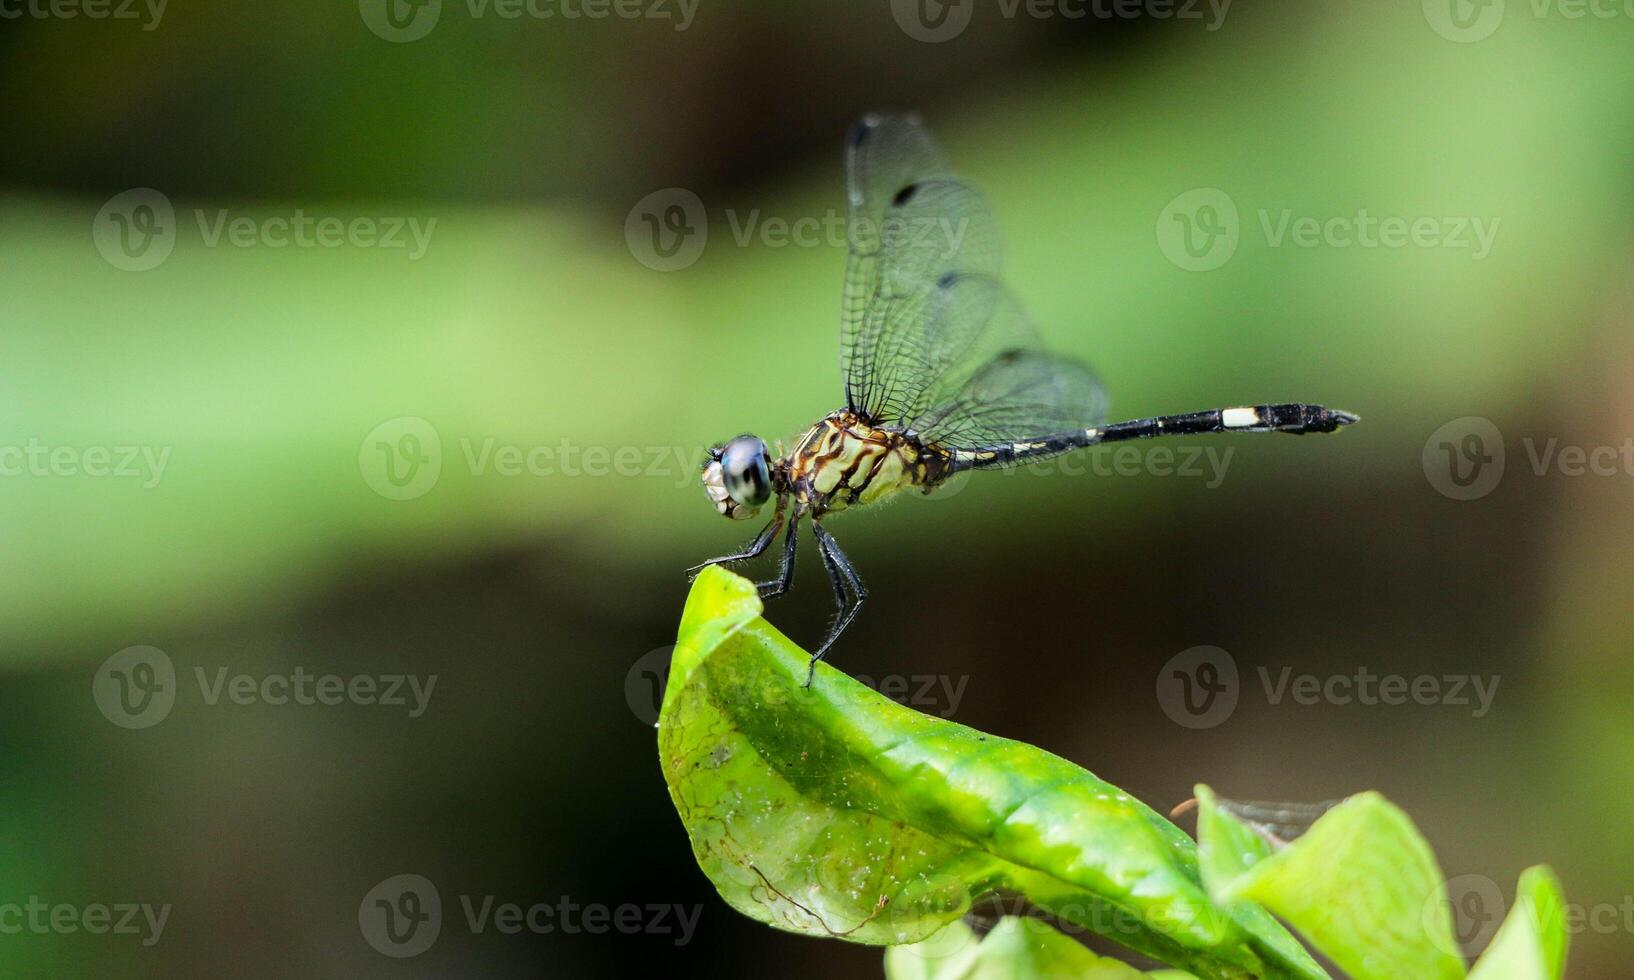 sehr detailliert Makro Foto von ein Libelle. Makro Schuss, zeigen Einzelheiten von das Libelle Augen und Flügel. schön Libelle im natürlich Lebensraum